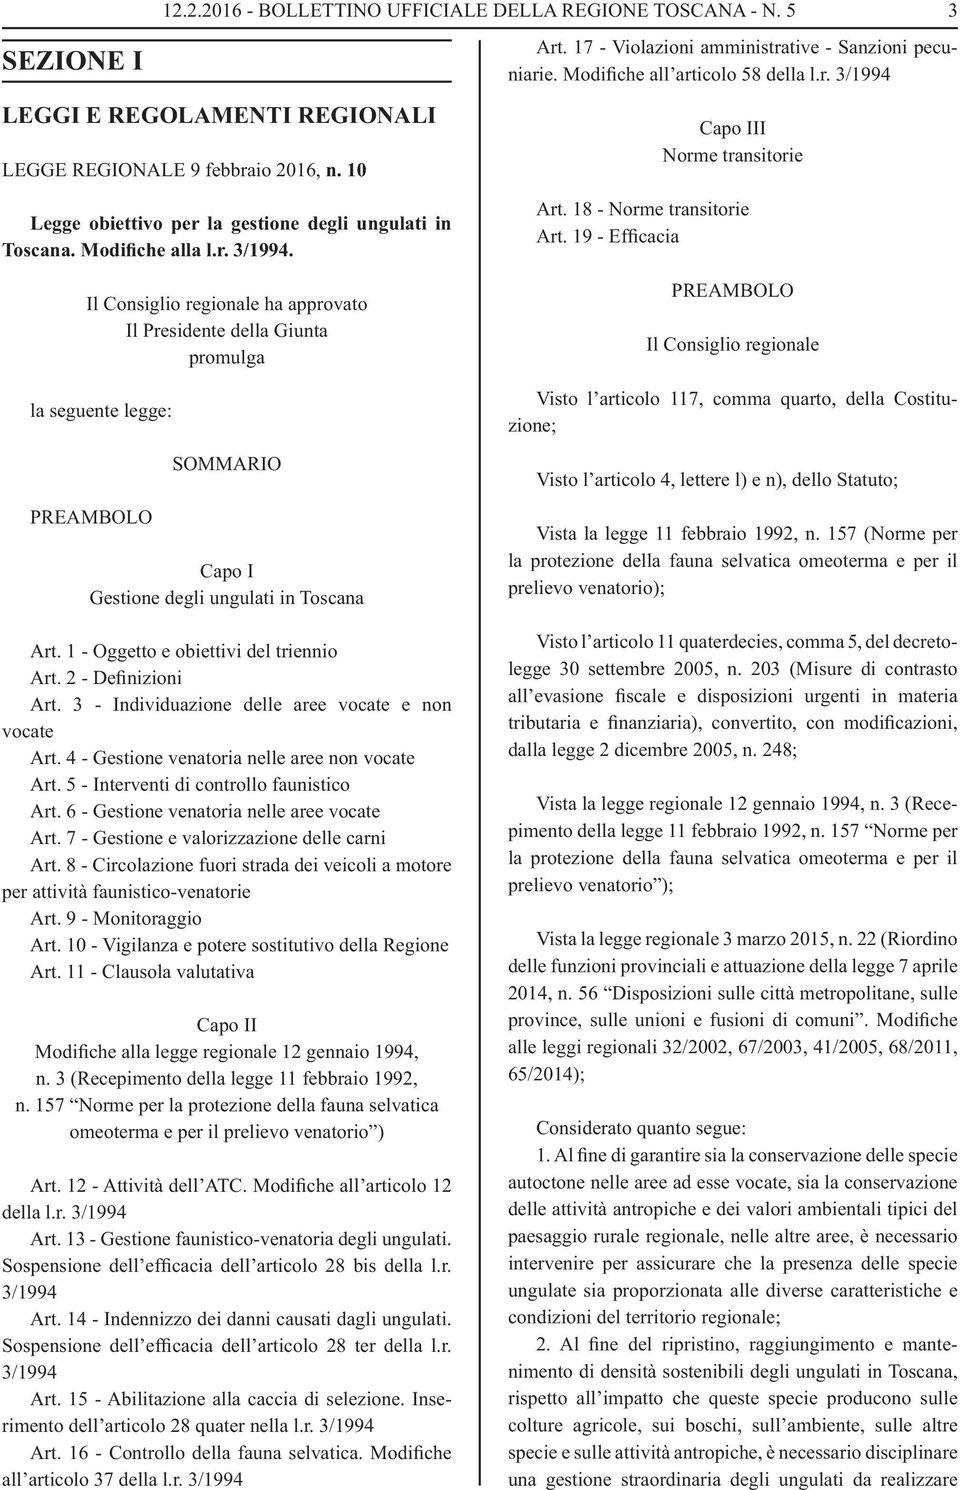 Capo III Norme transitorie 3 Legge obiettivo per la gestione degli ungulati in Toscana. Modifiche alla l.r. 3/1994.